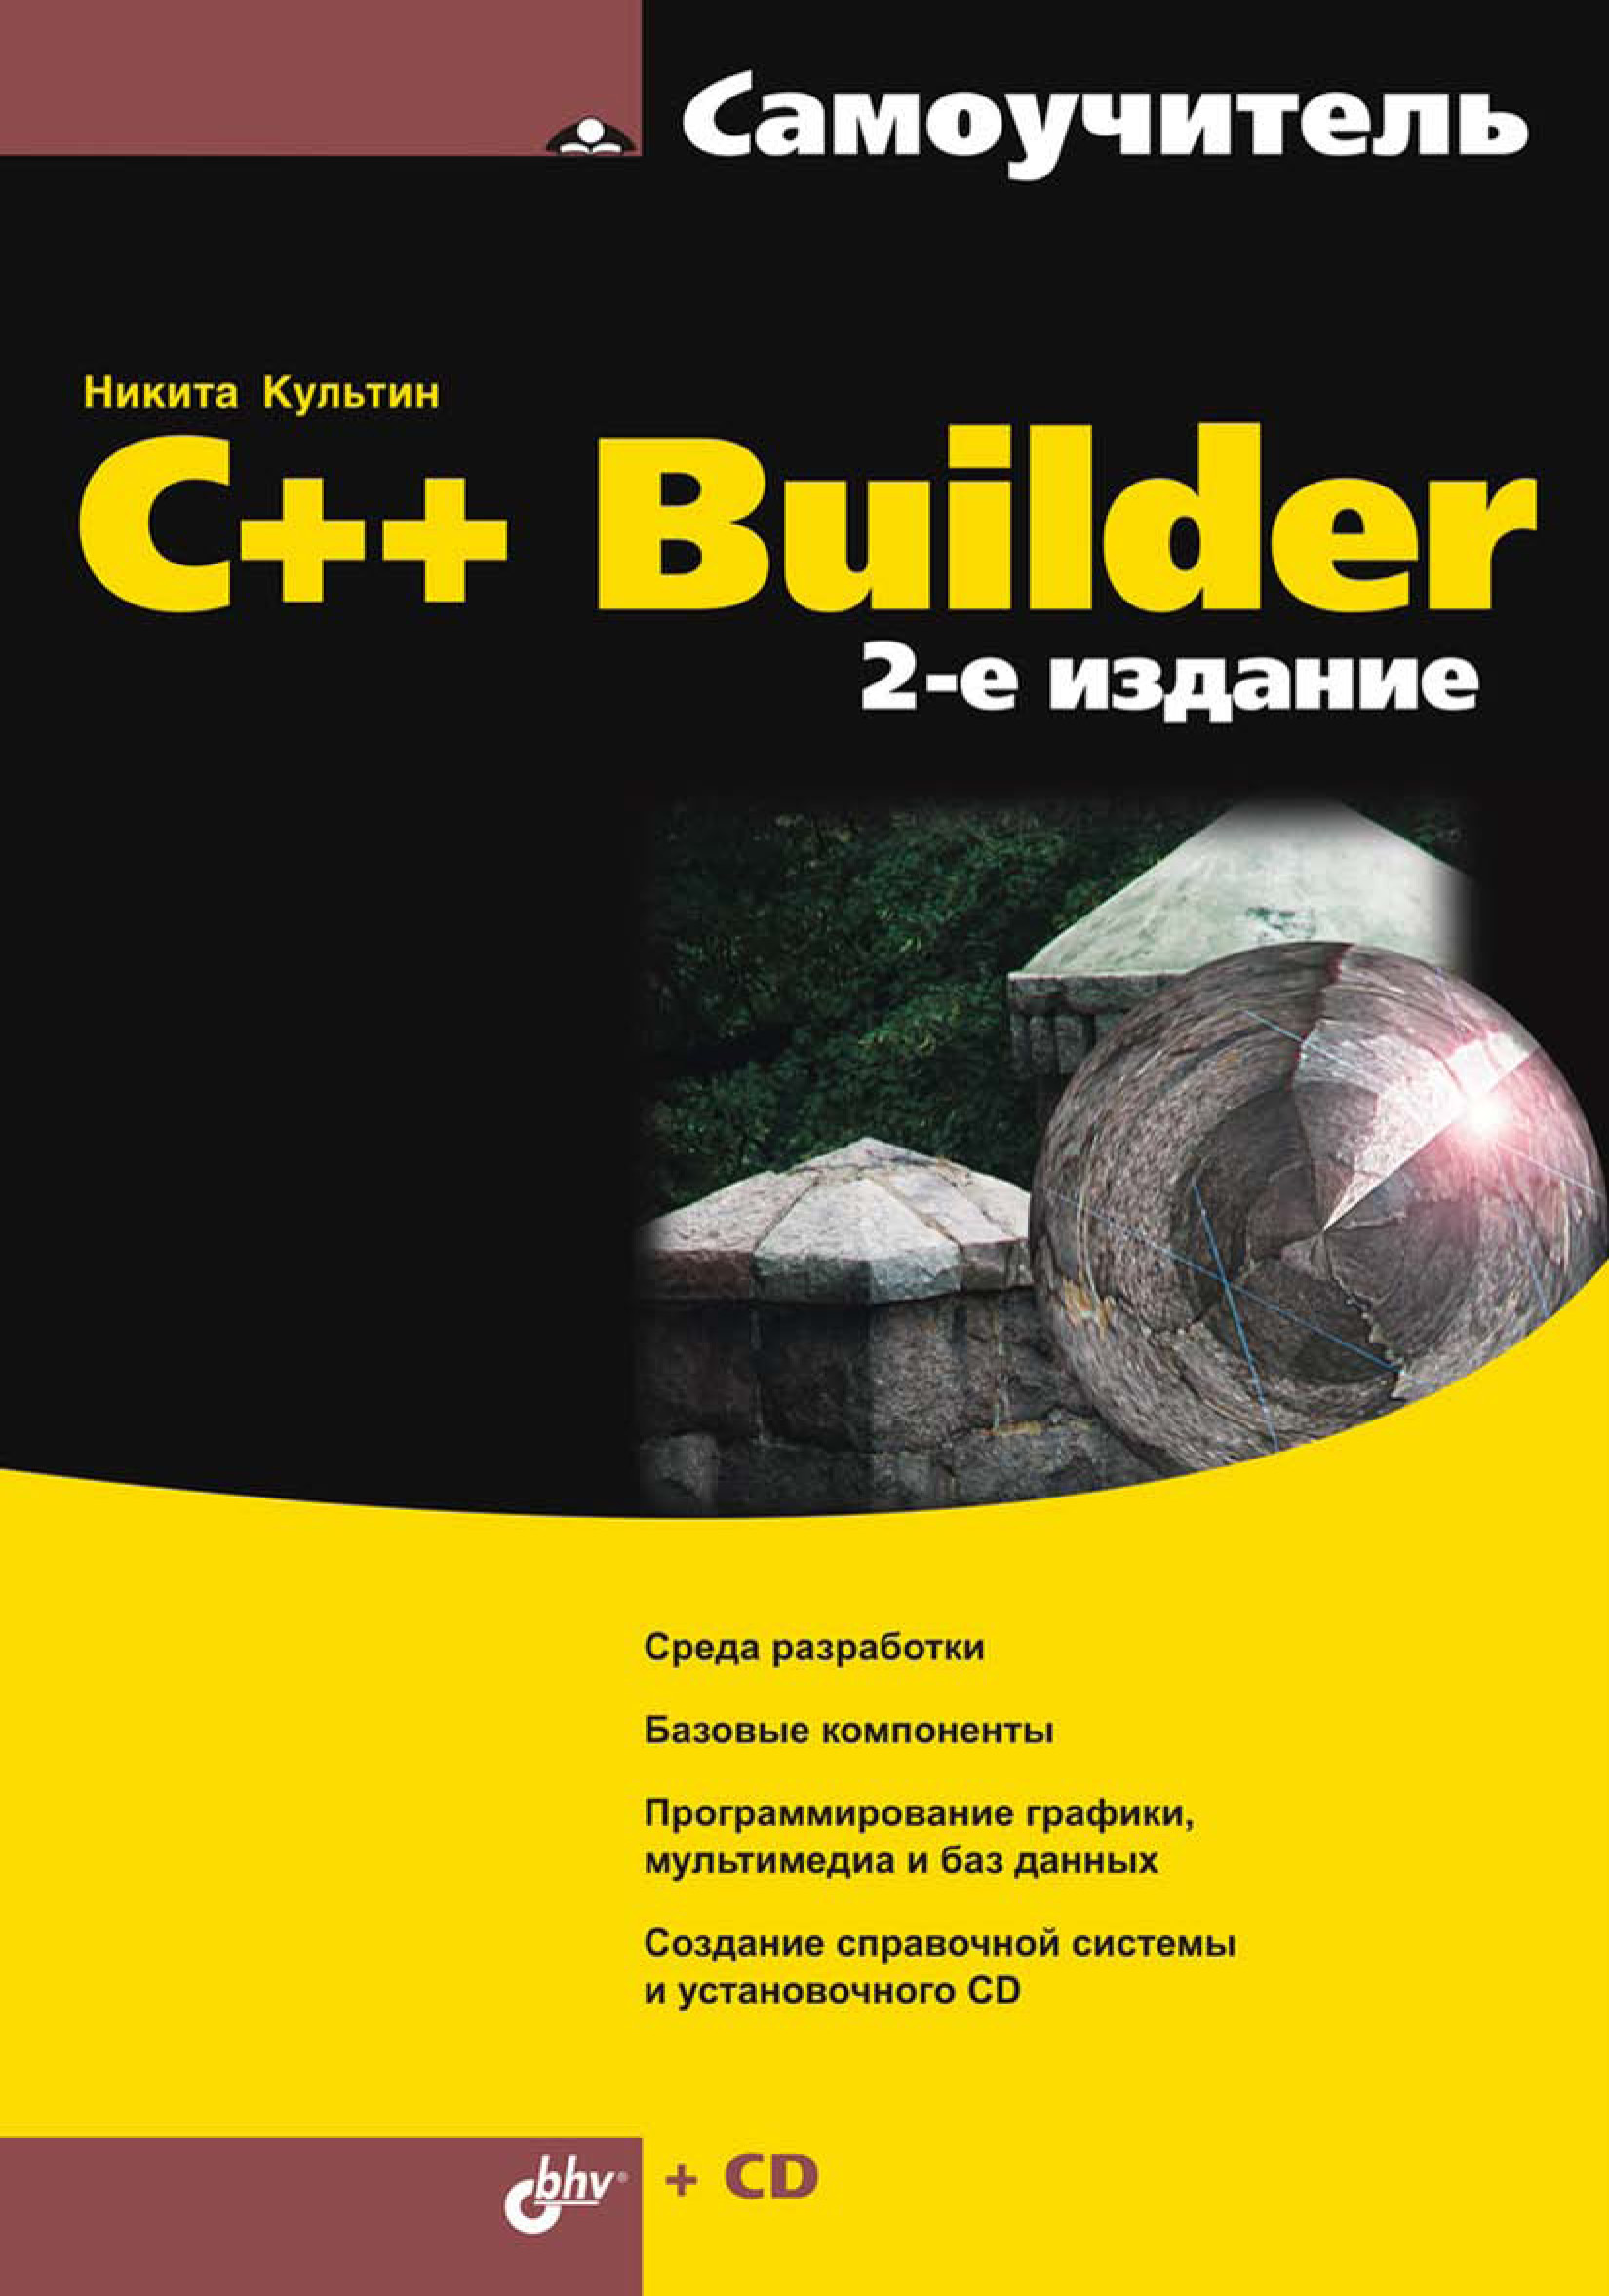 Книга Самоучитель (BHV) C++ Builder созданная Никита Культин может относится к жанру программирование, самоучители. Стоимость электронной книги C++ Builder с идентификатором 6991162 составляет 151.00 руб.